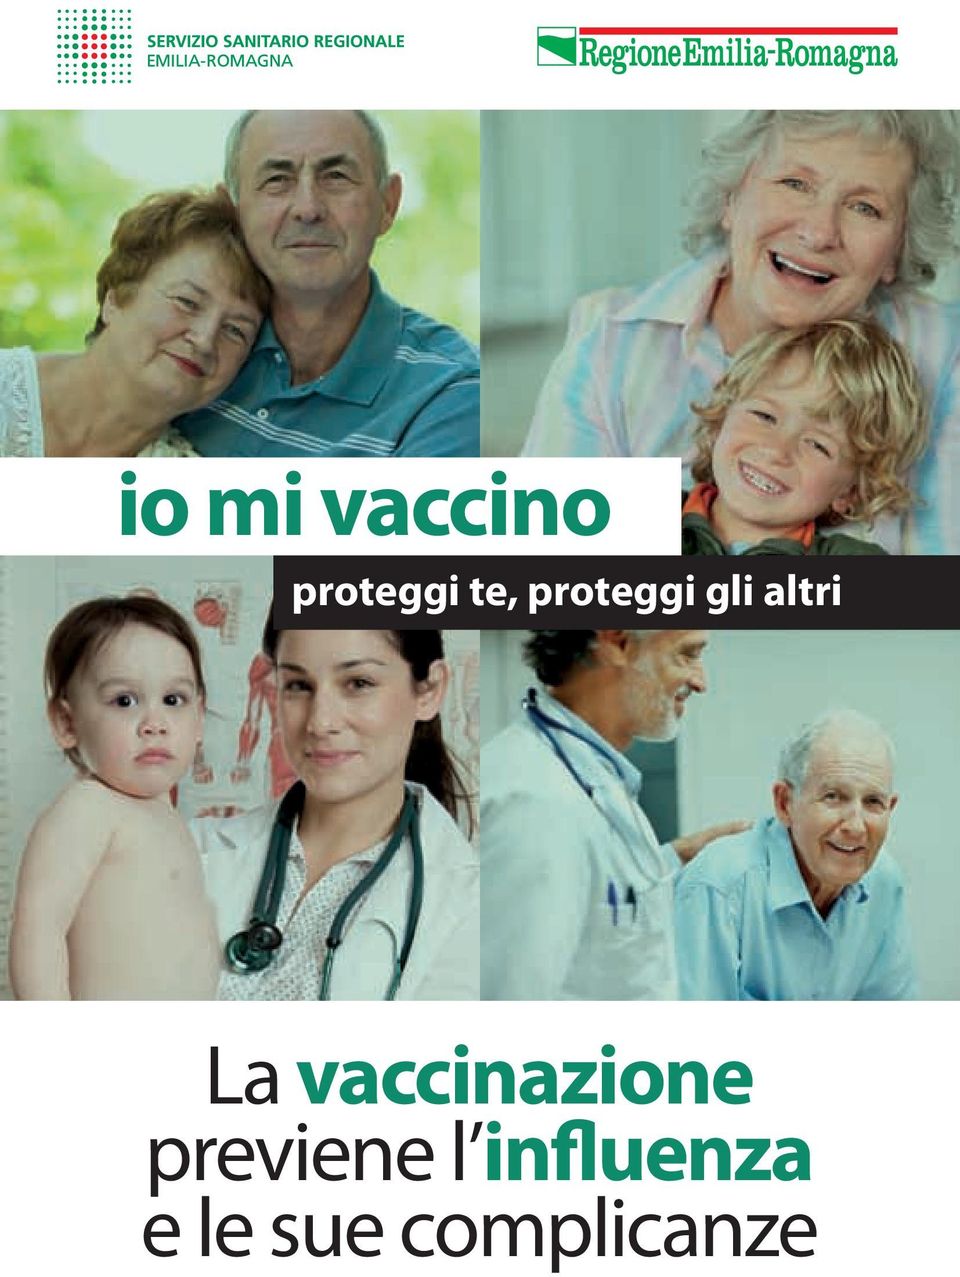 vaccinazione previene l